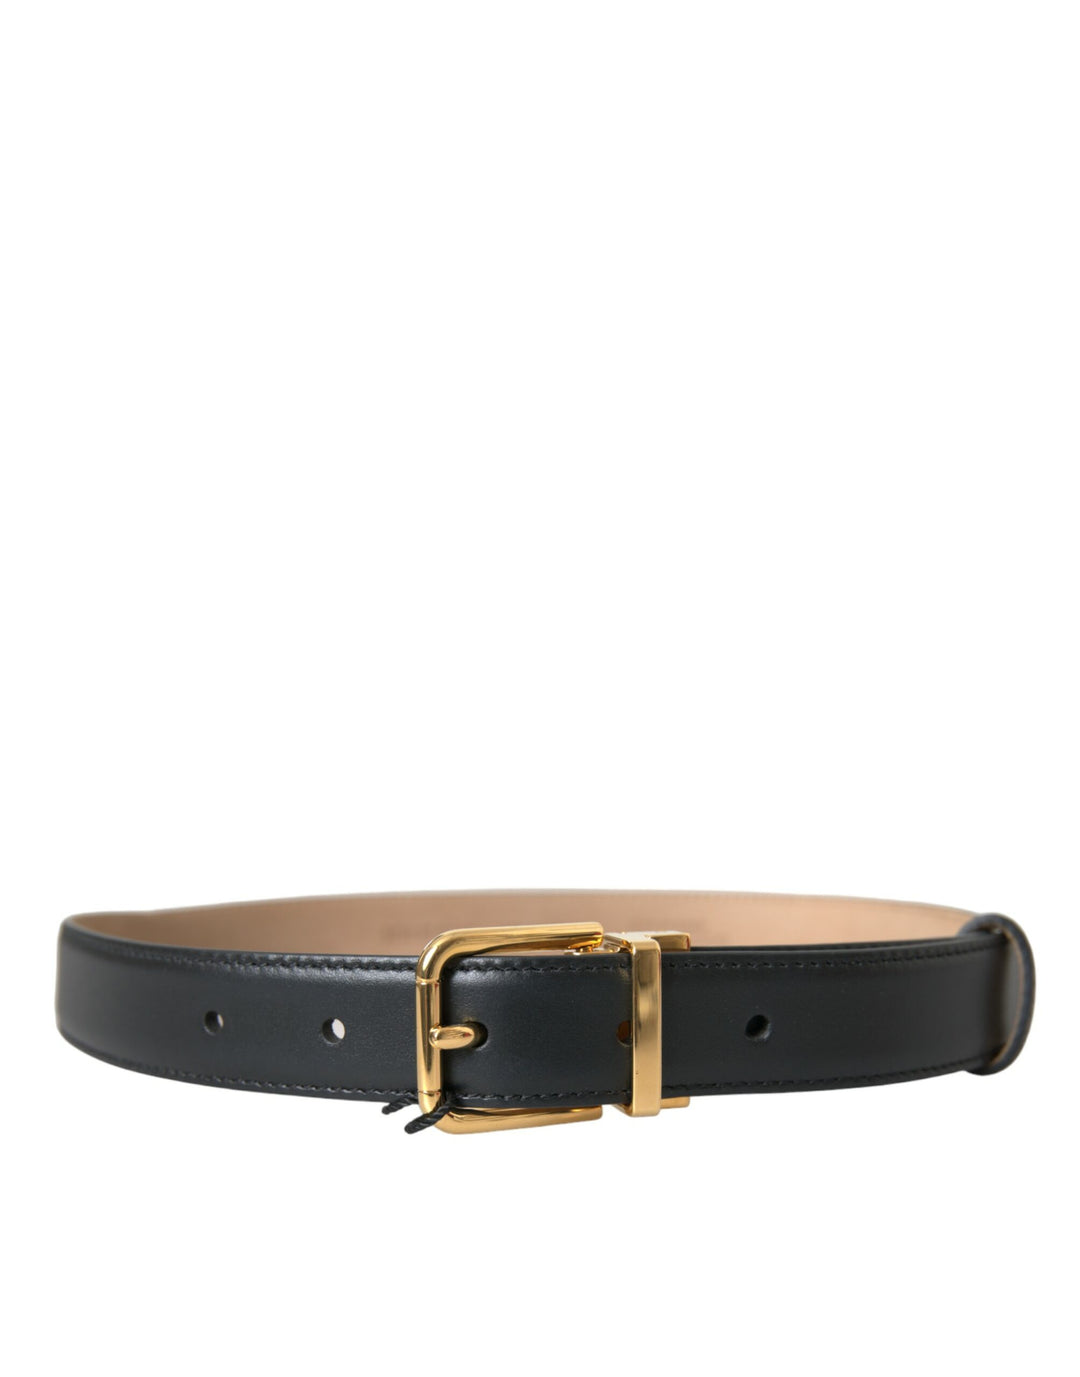 Dolce & Gabbana Black Leather Gold Metal Buckle Belt Men